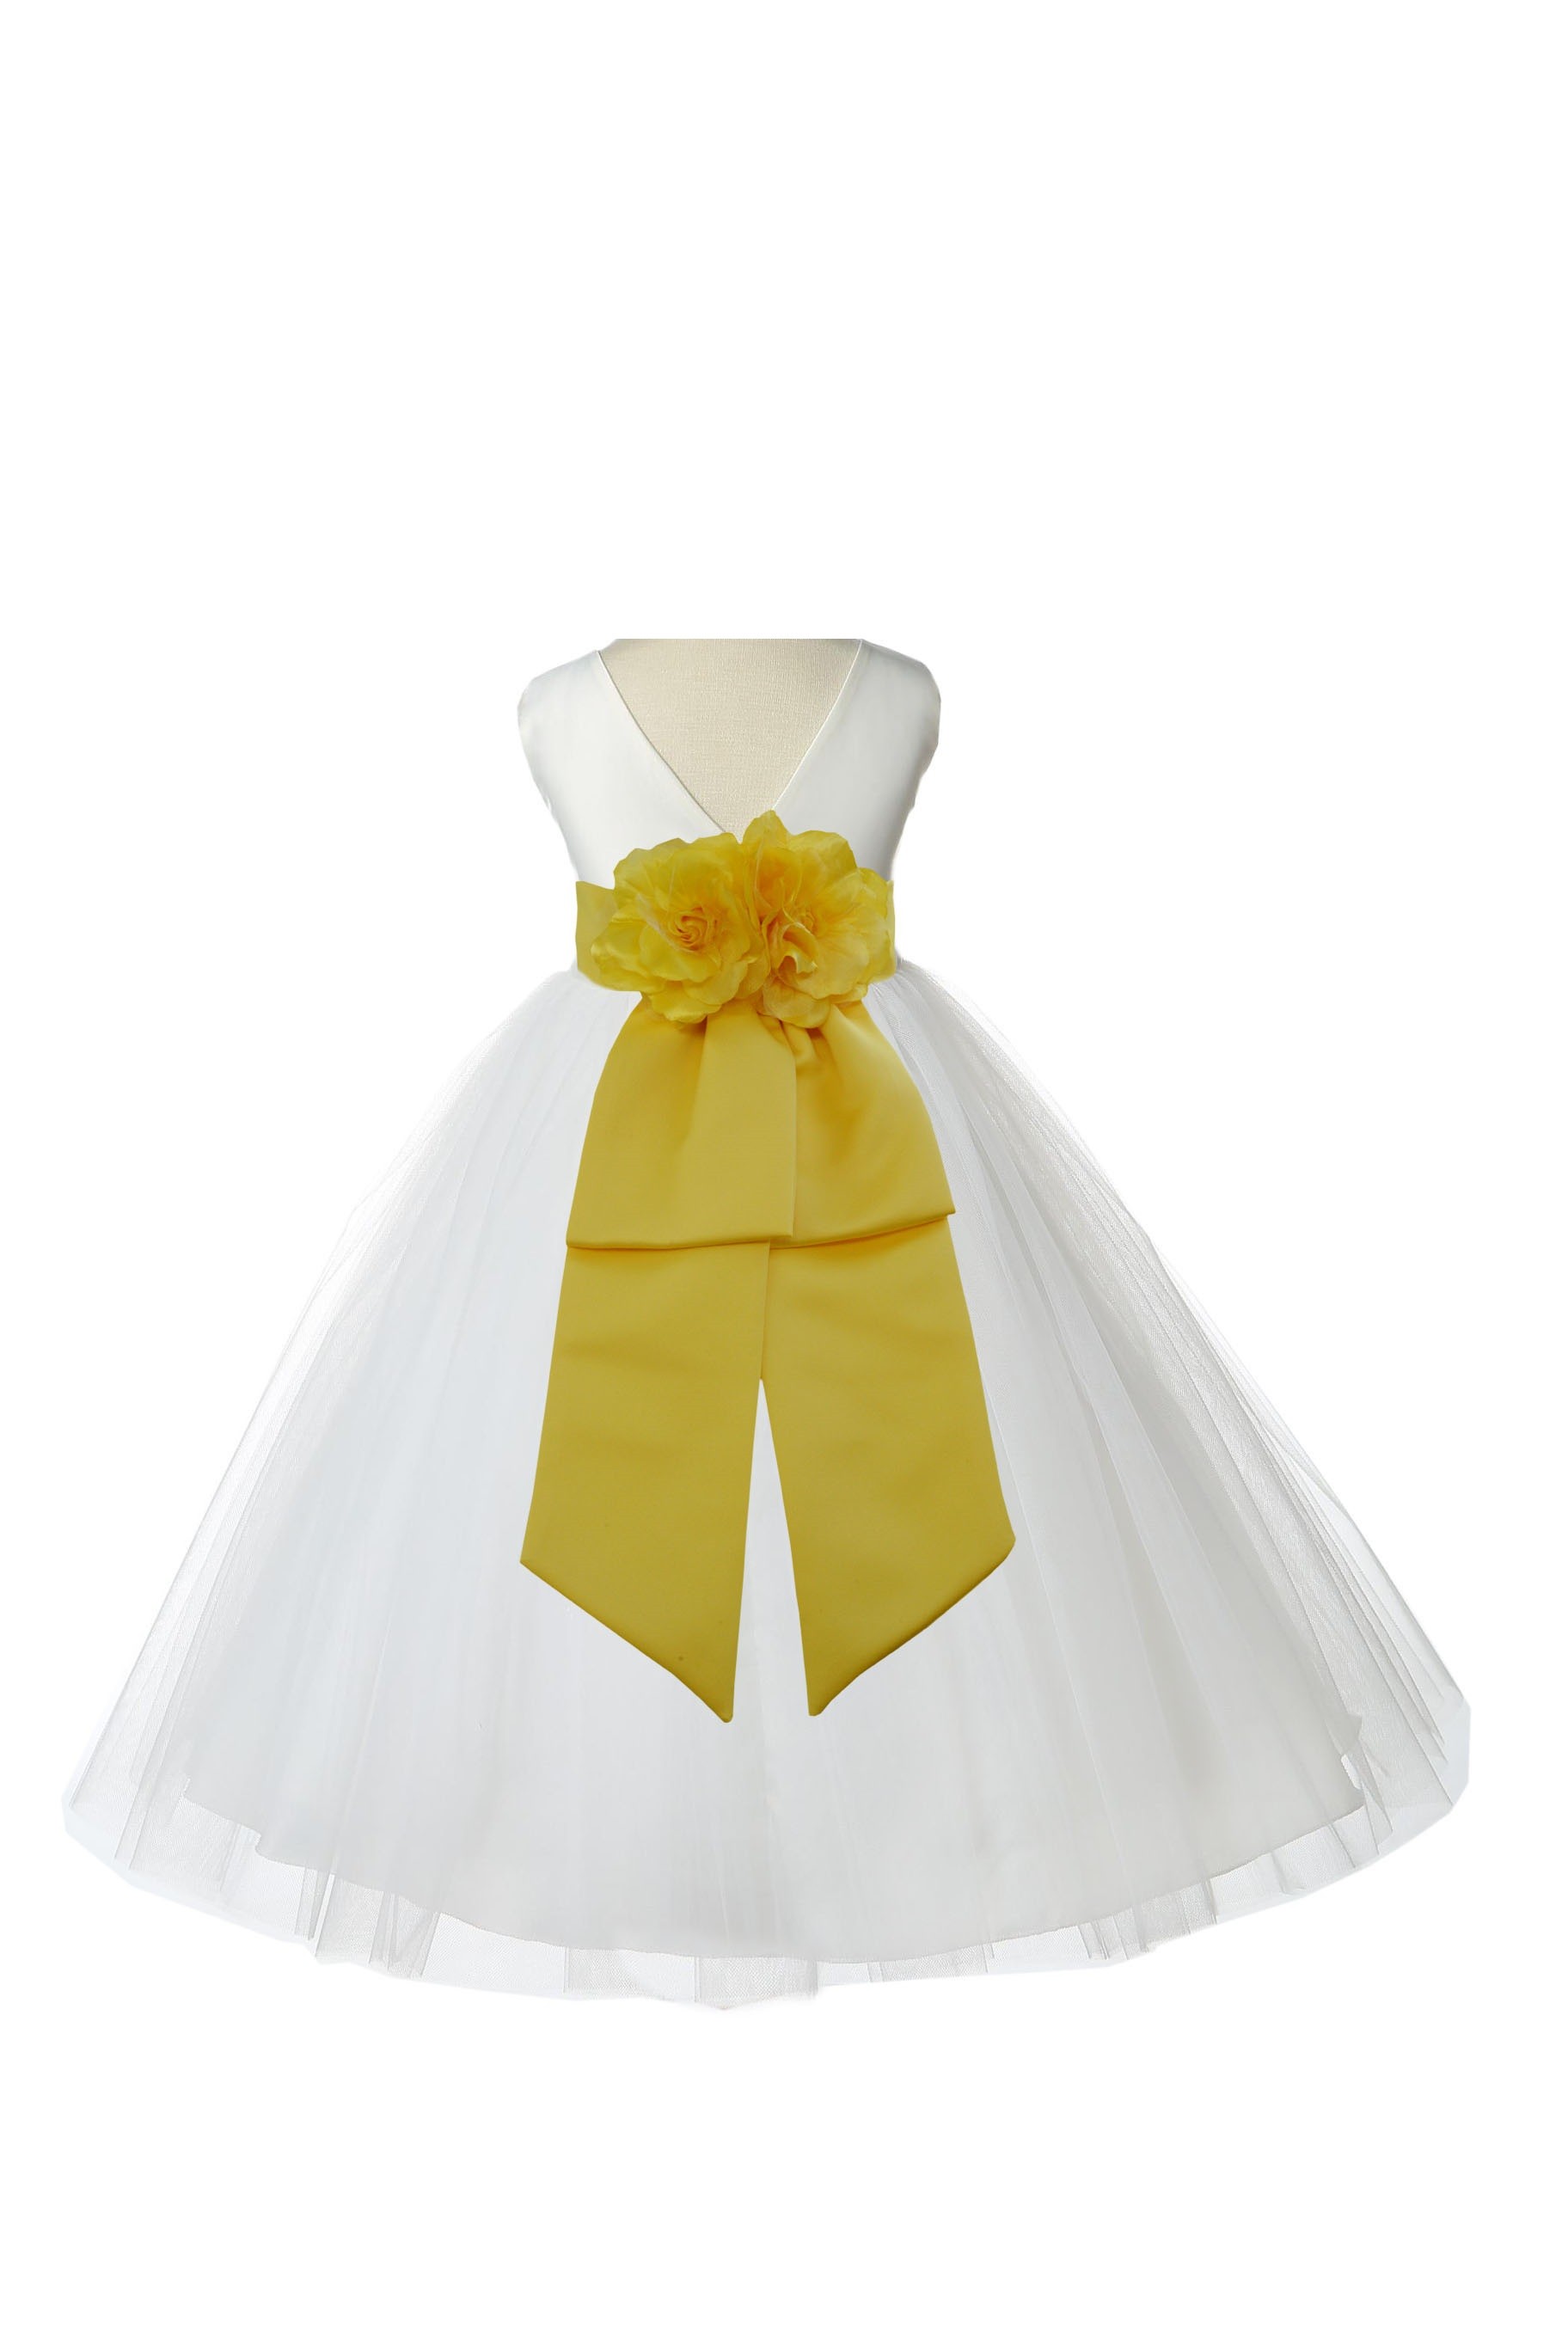 V-Neck Tulle Ivory/Sunbeam Flower Girl Dress Wedding Pageant 108